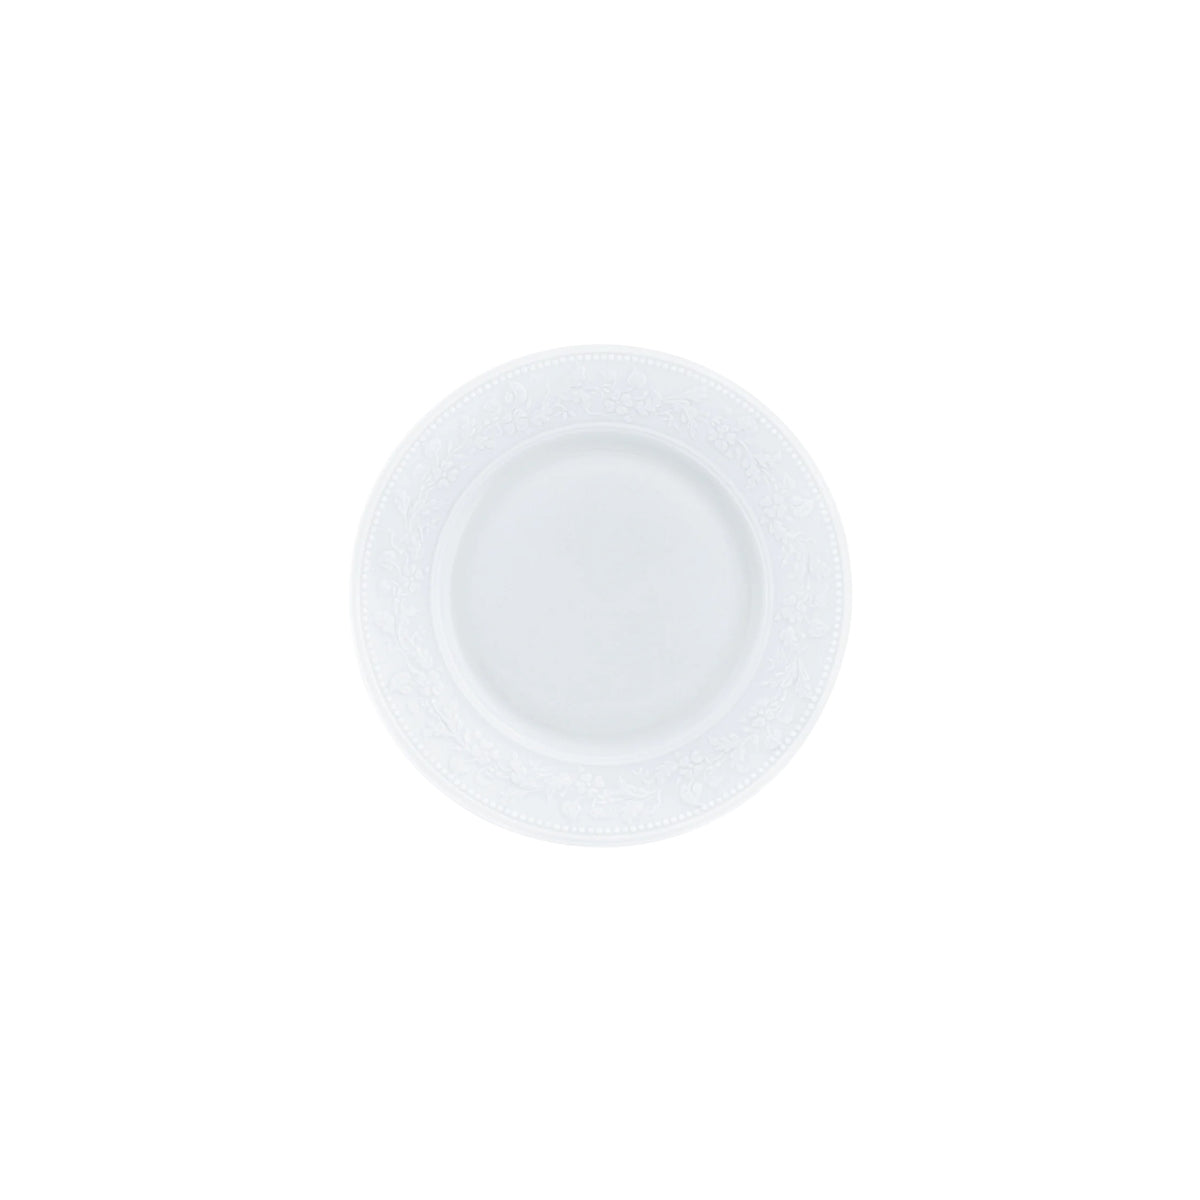 GEORGIA White - Bread plate